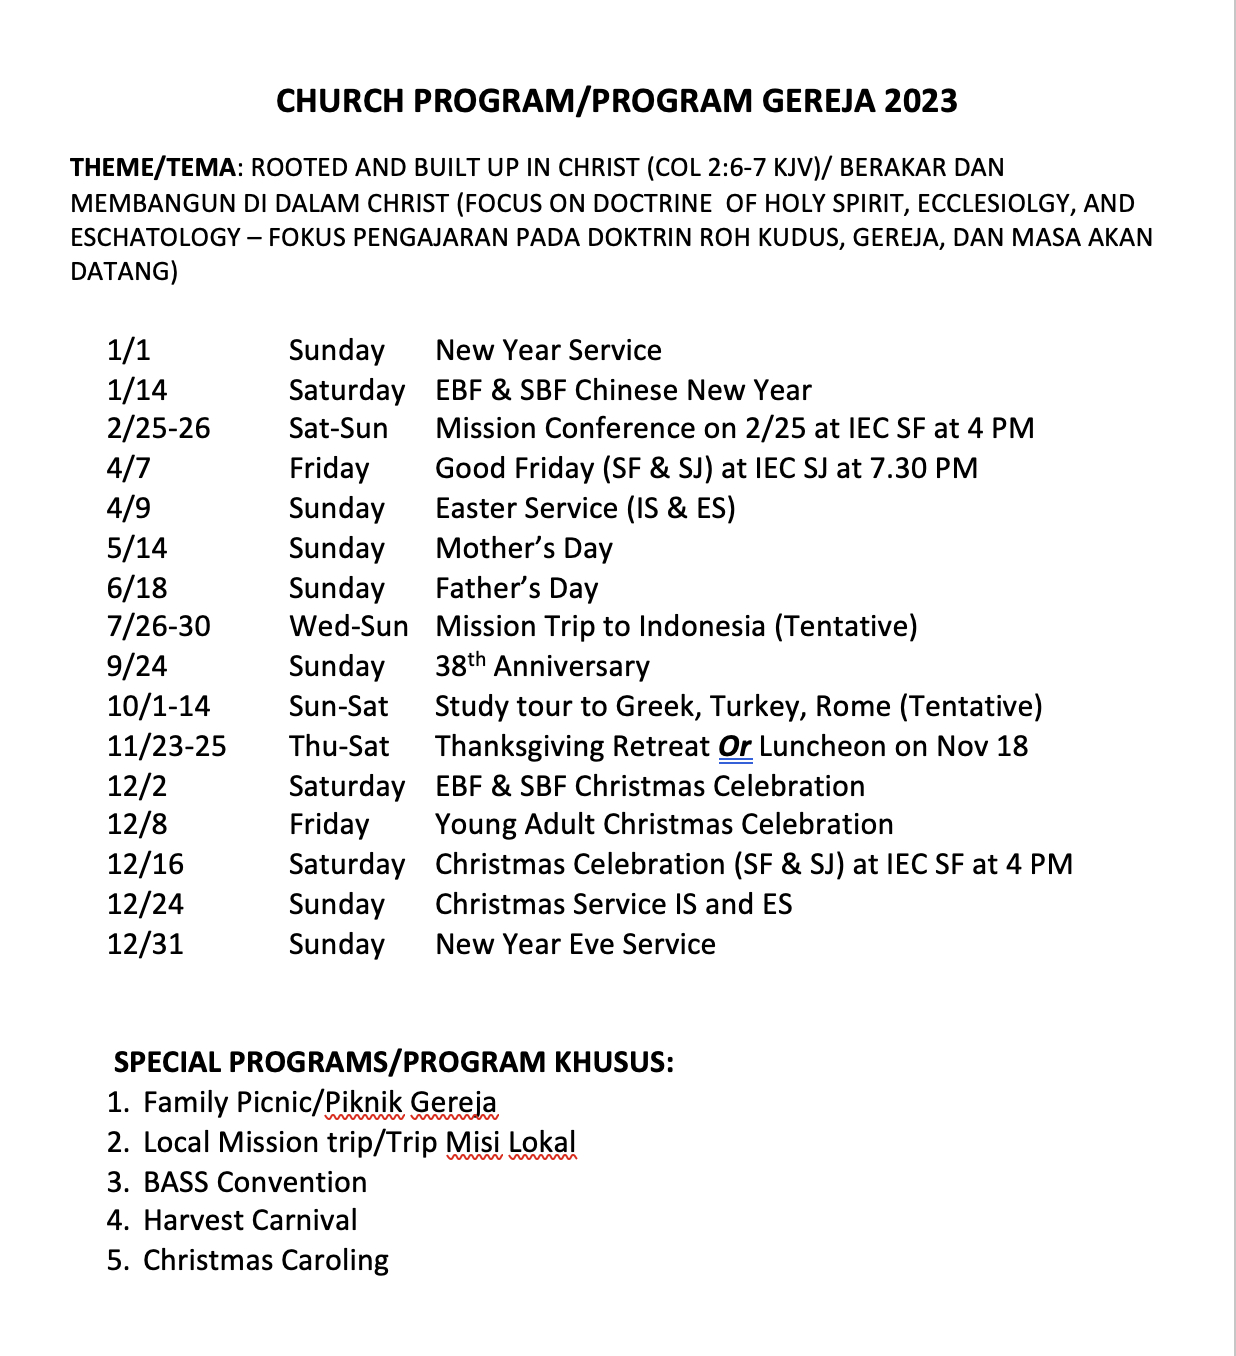 Program Gereja 2023